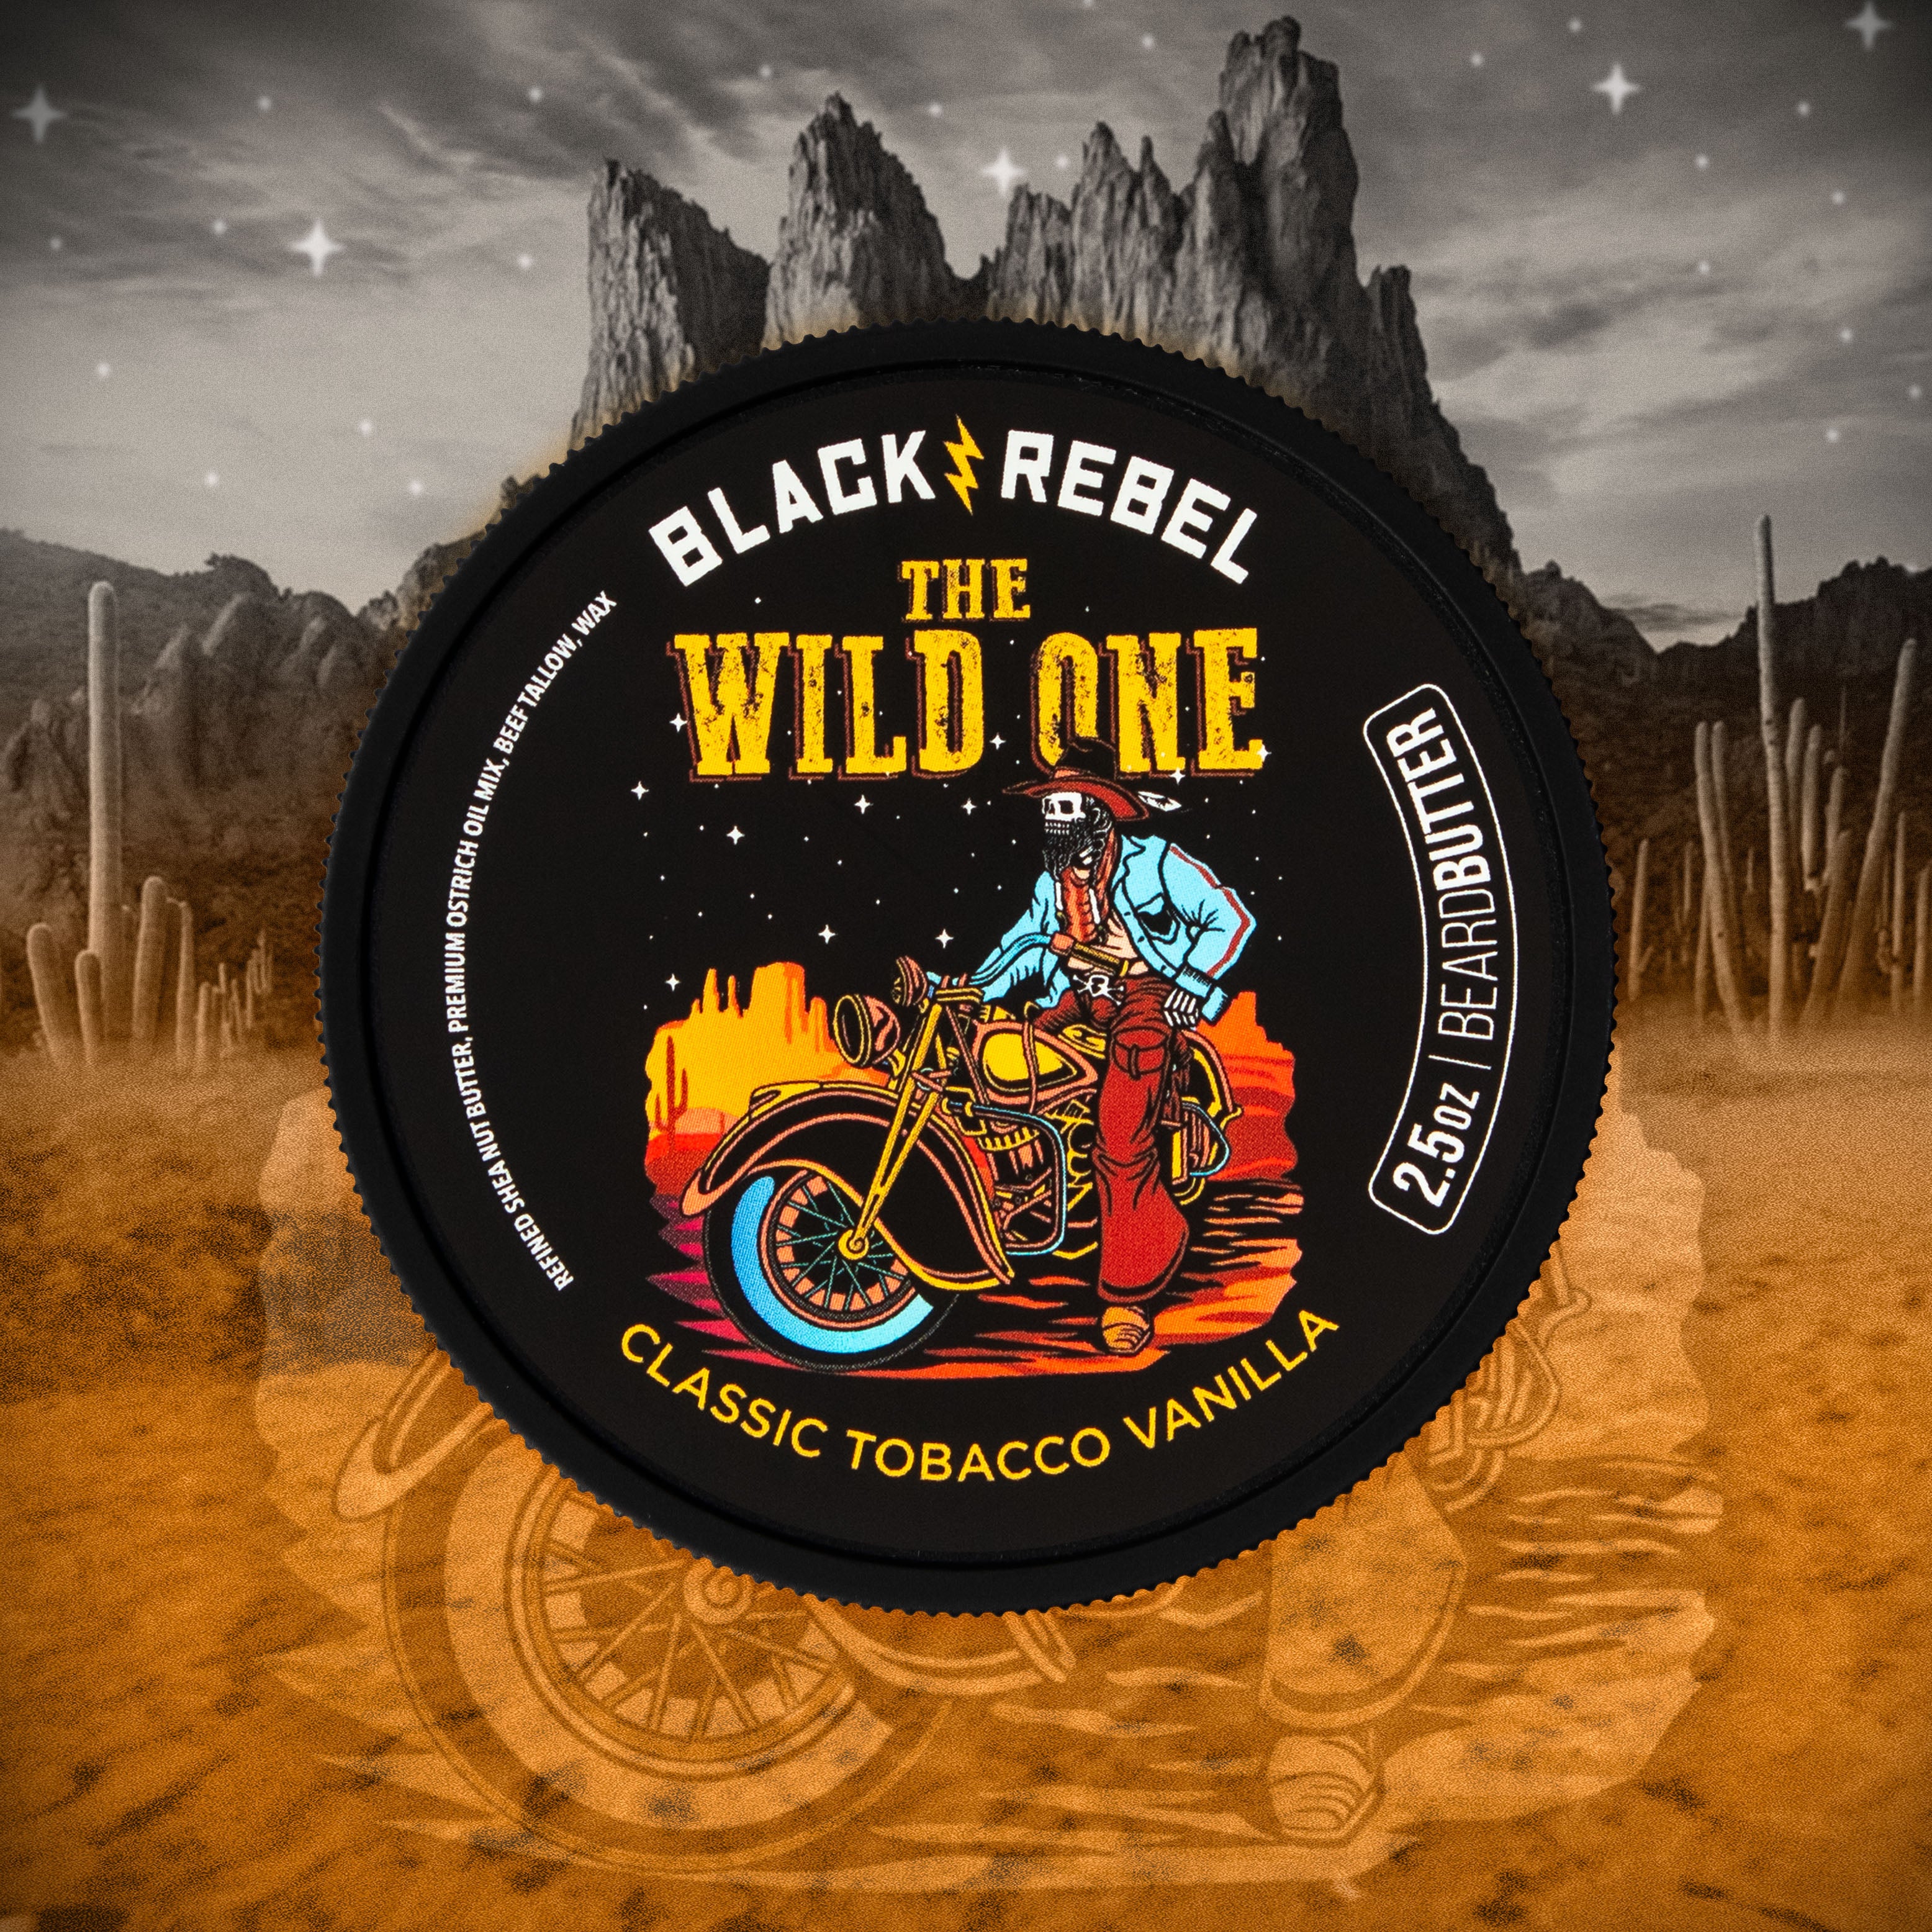 THE WILD ONE (classic tobacco vanilla)